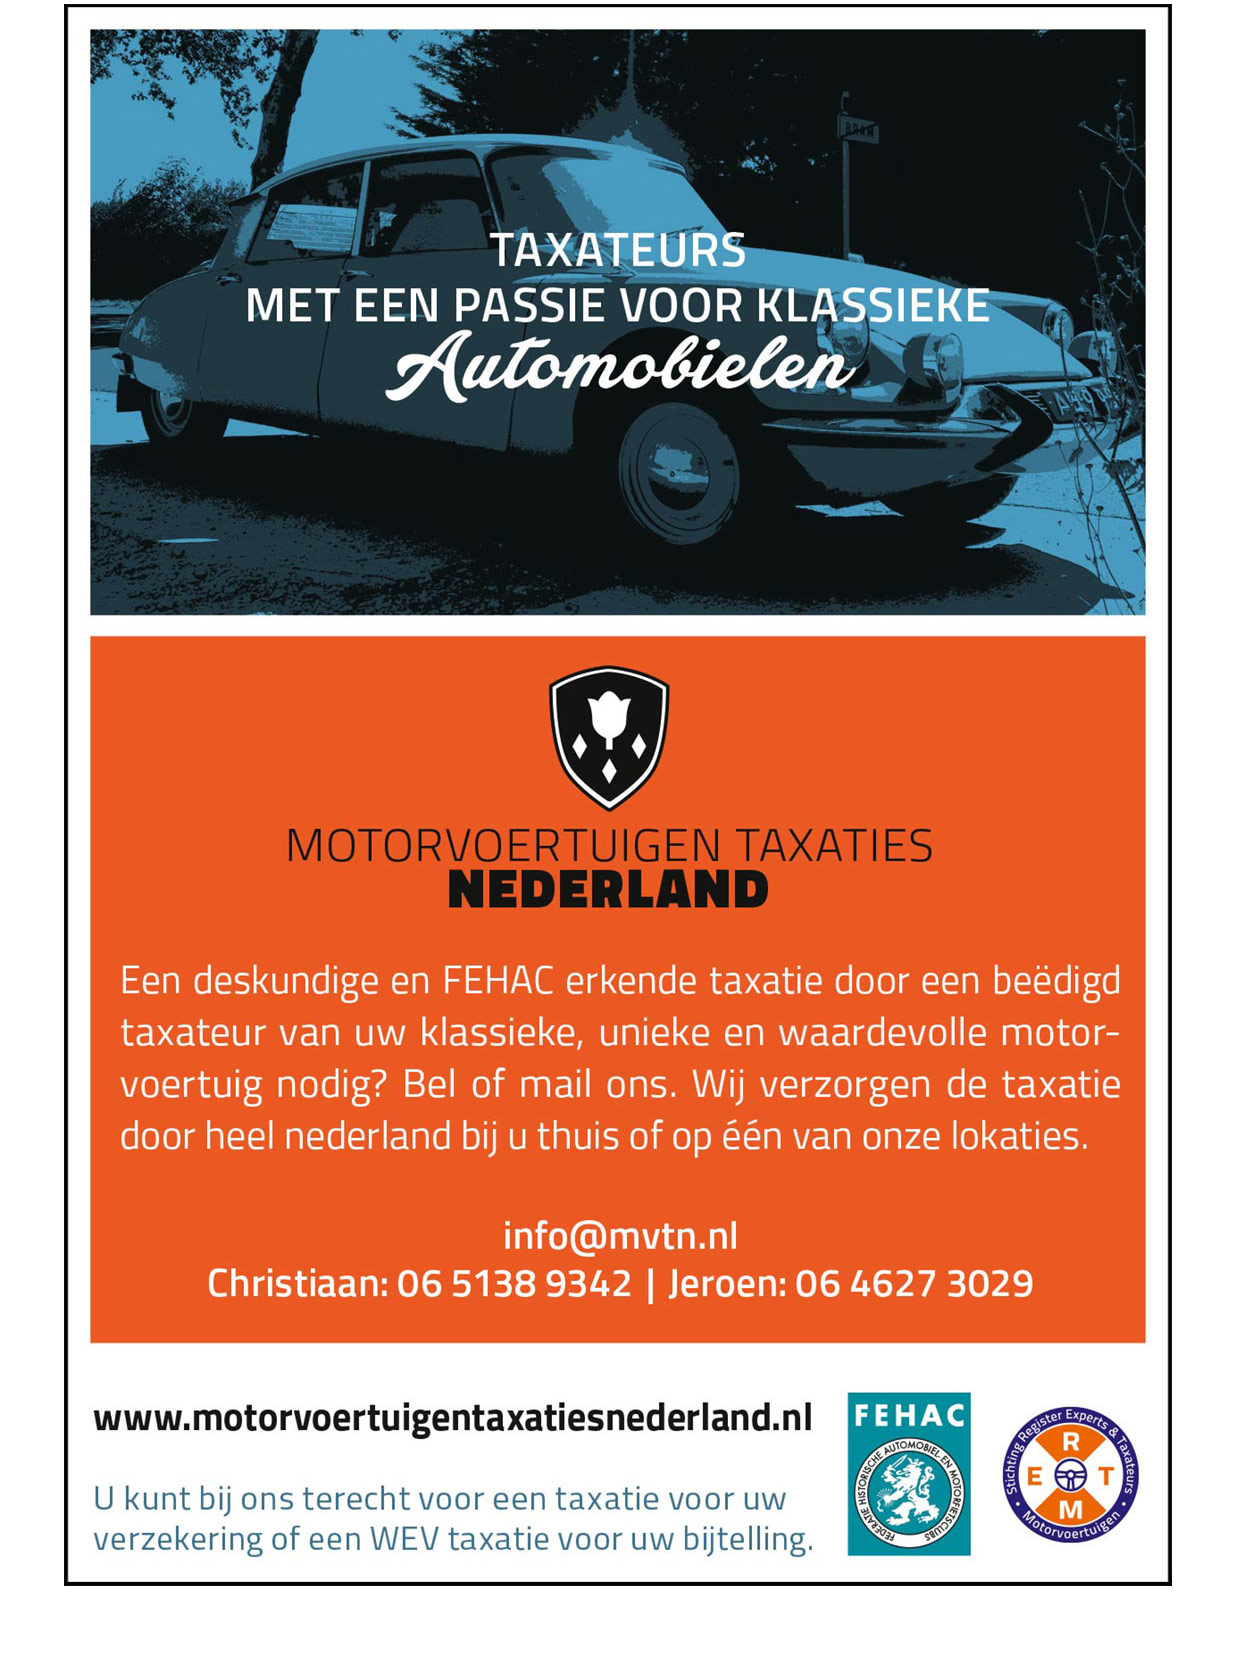 Motorvoertuigen Taxaties Nederland